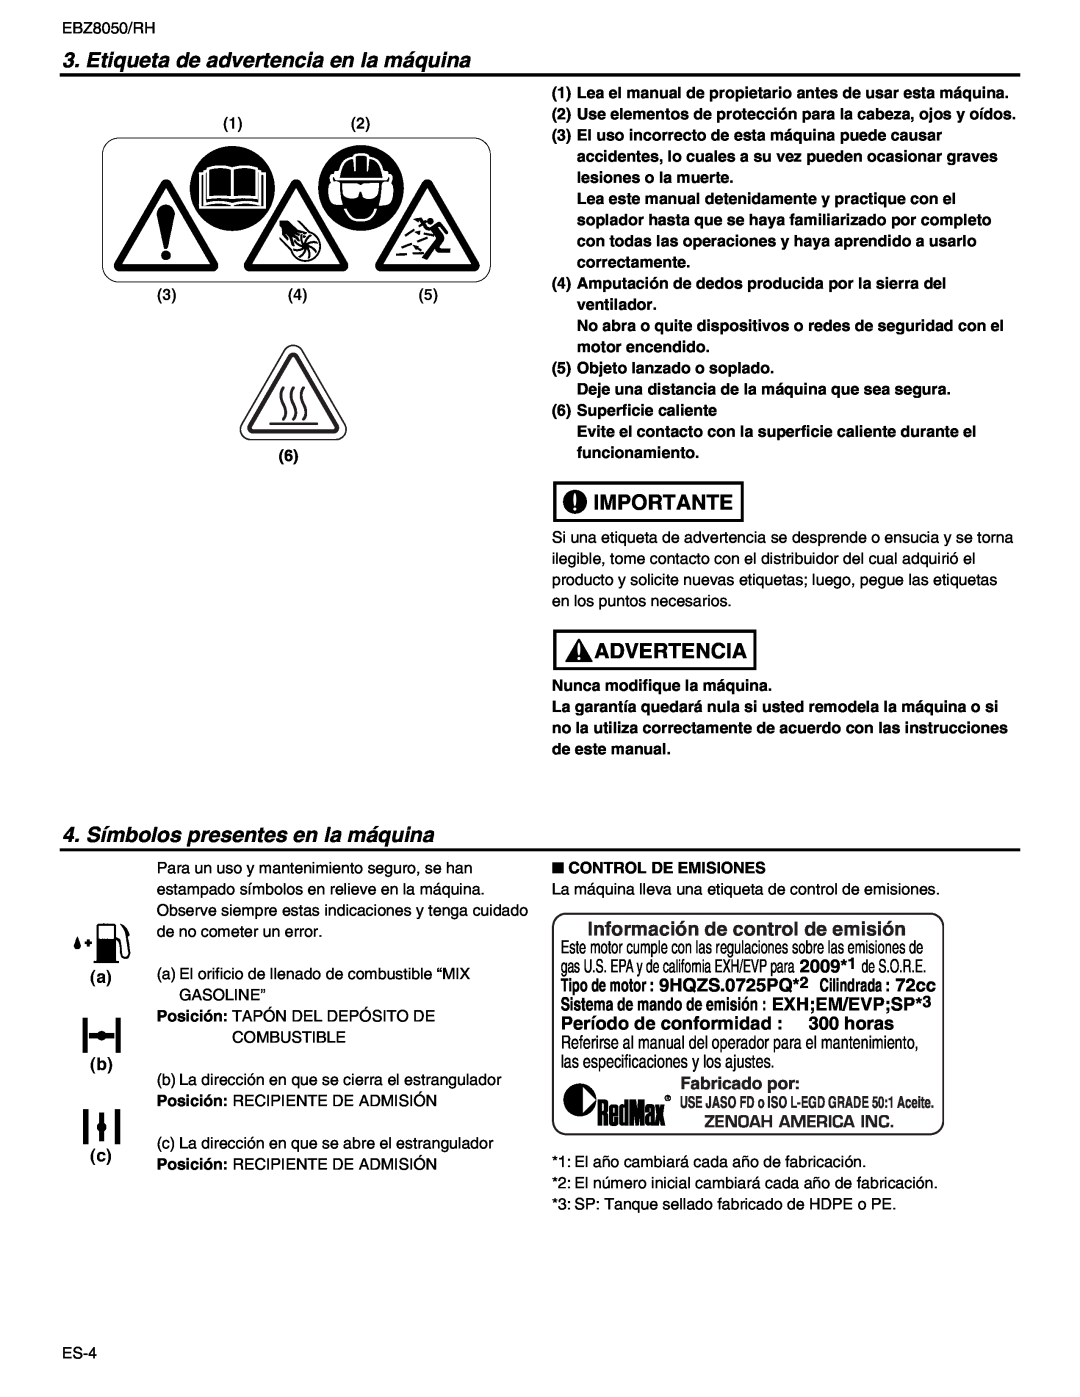 RedMax EBZ8050 manual Etiqueta de advertencia en la máquina, 4. Símbolos presentes en la máquina, Fabricado por, Importante 